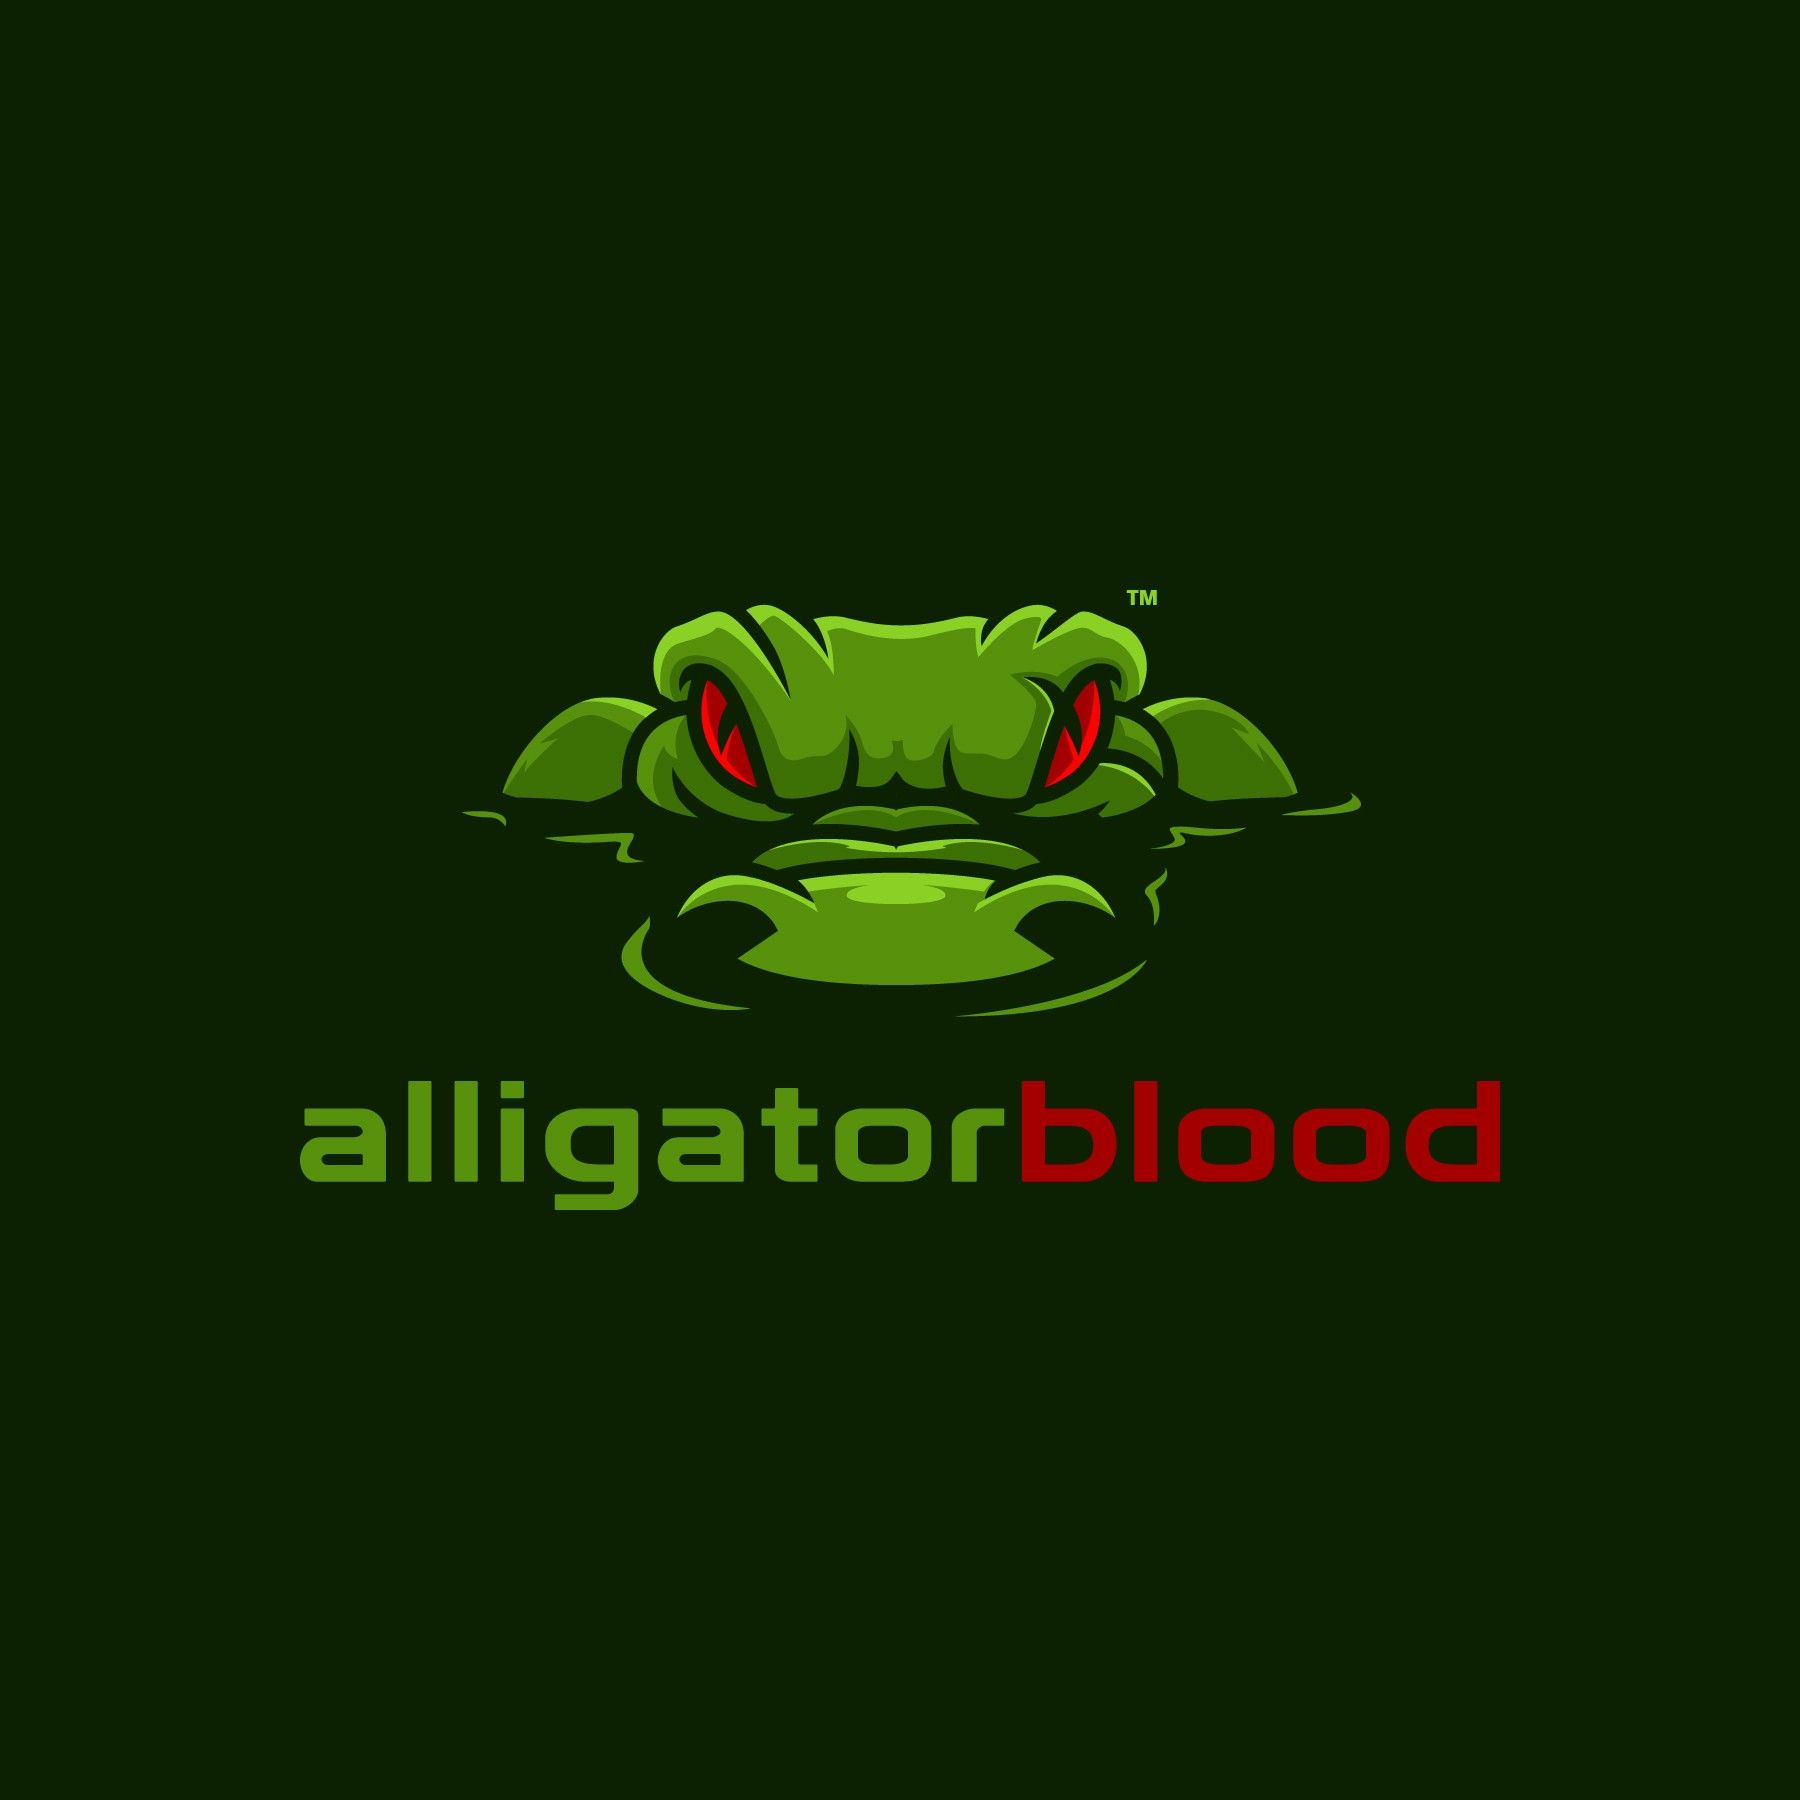 Alligator Logo - Alligator Blood logo. Logos Inspiration. Logos, Logo design, Logo